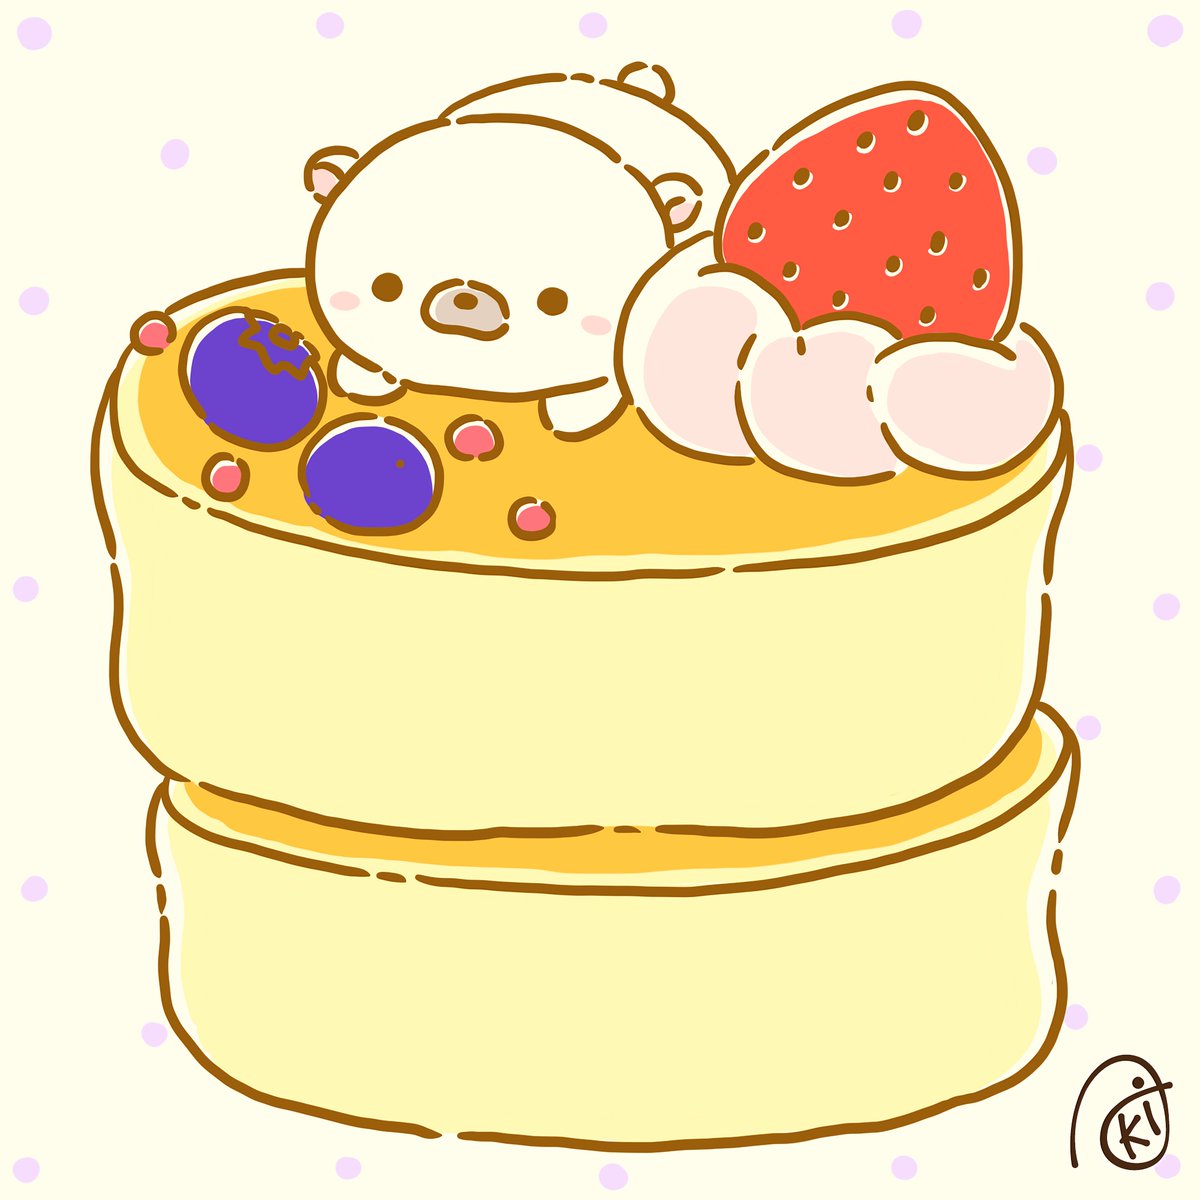 「厚焼きパンケーキ! #イラスト  #お絵描き  #シロクマ  #ホッキョクグマ 」|Akiのイラスト